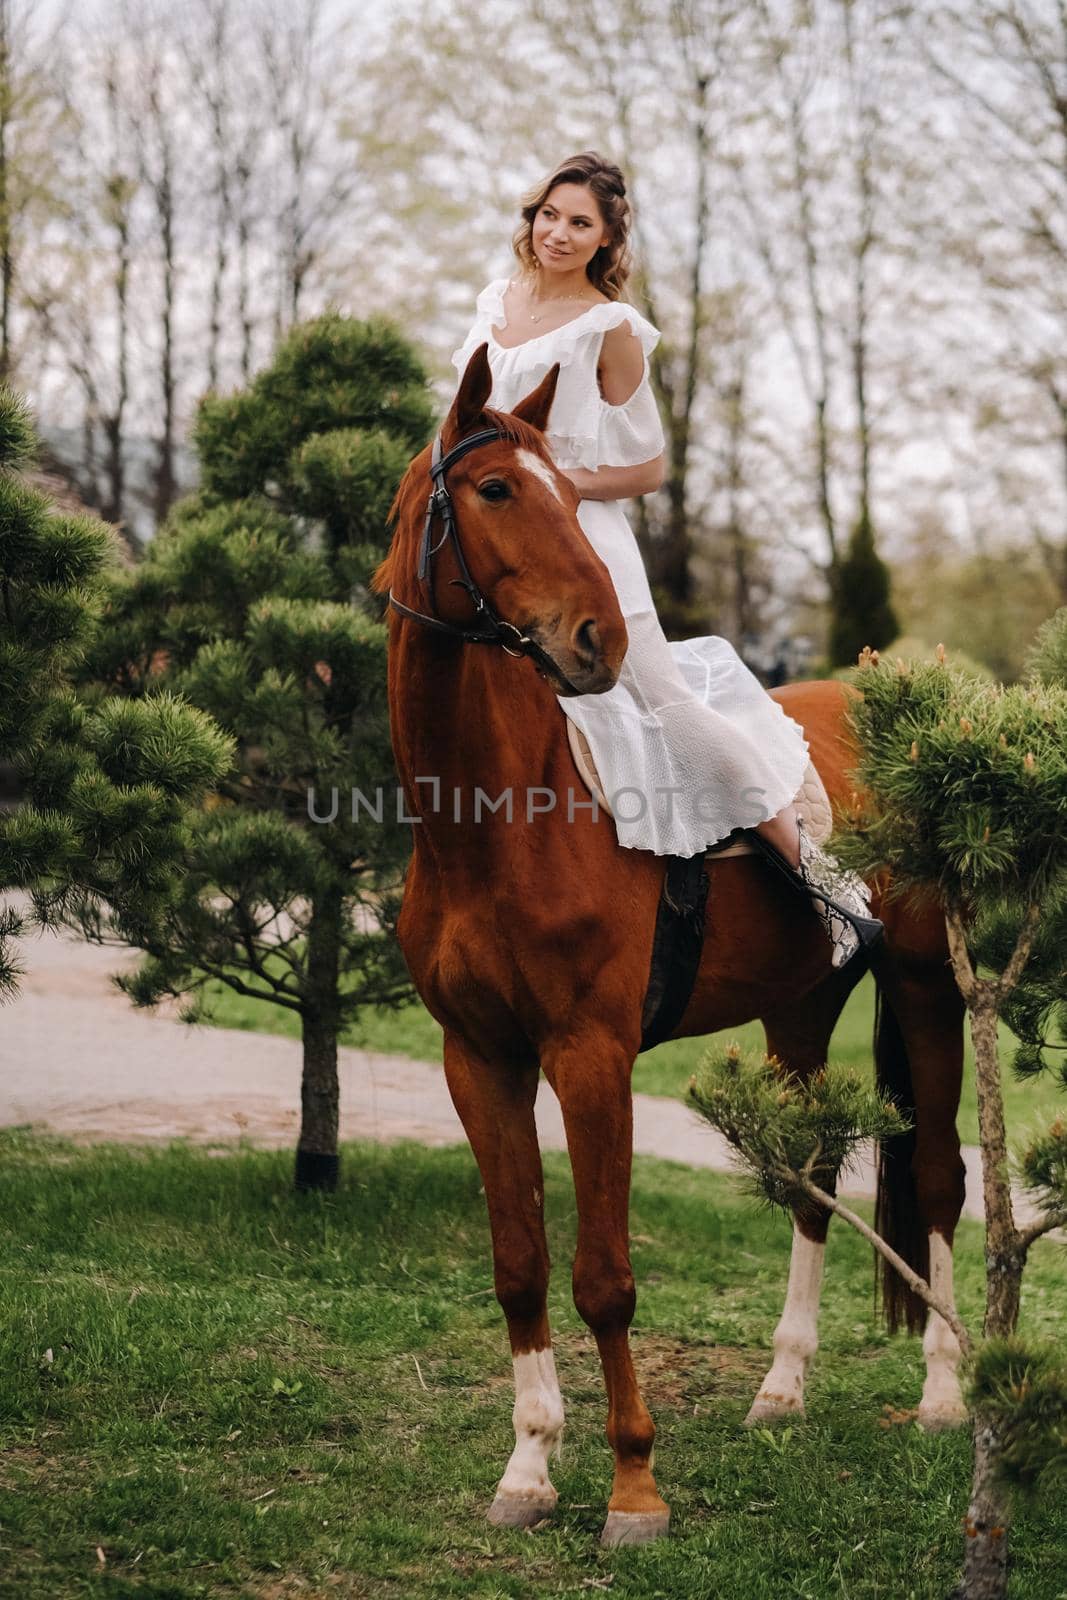 A woman in a white sundress riding a horse near a farm.